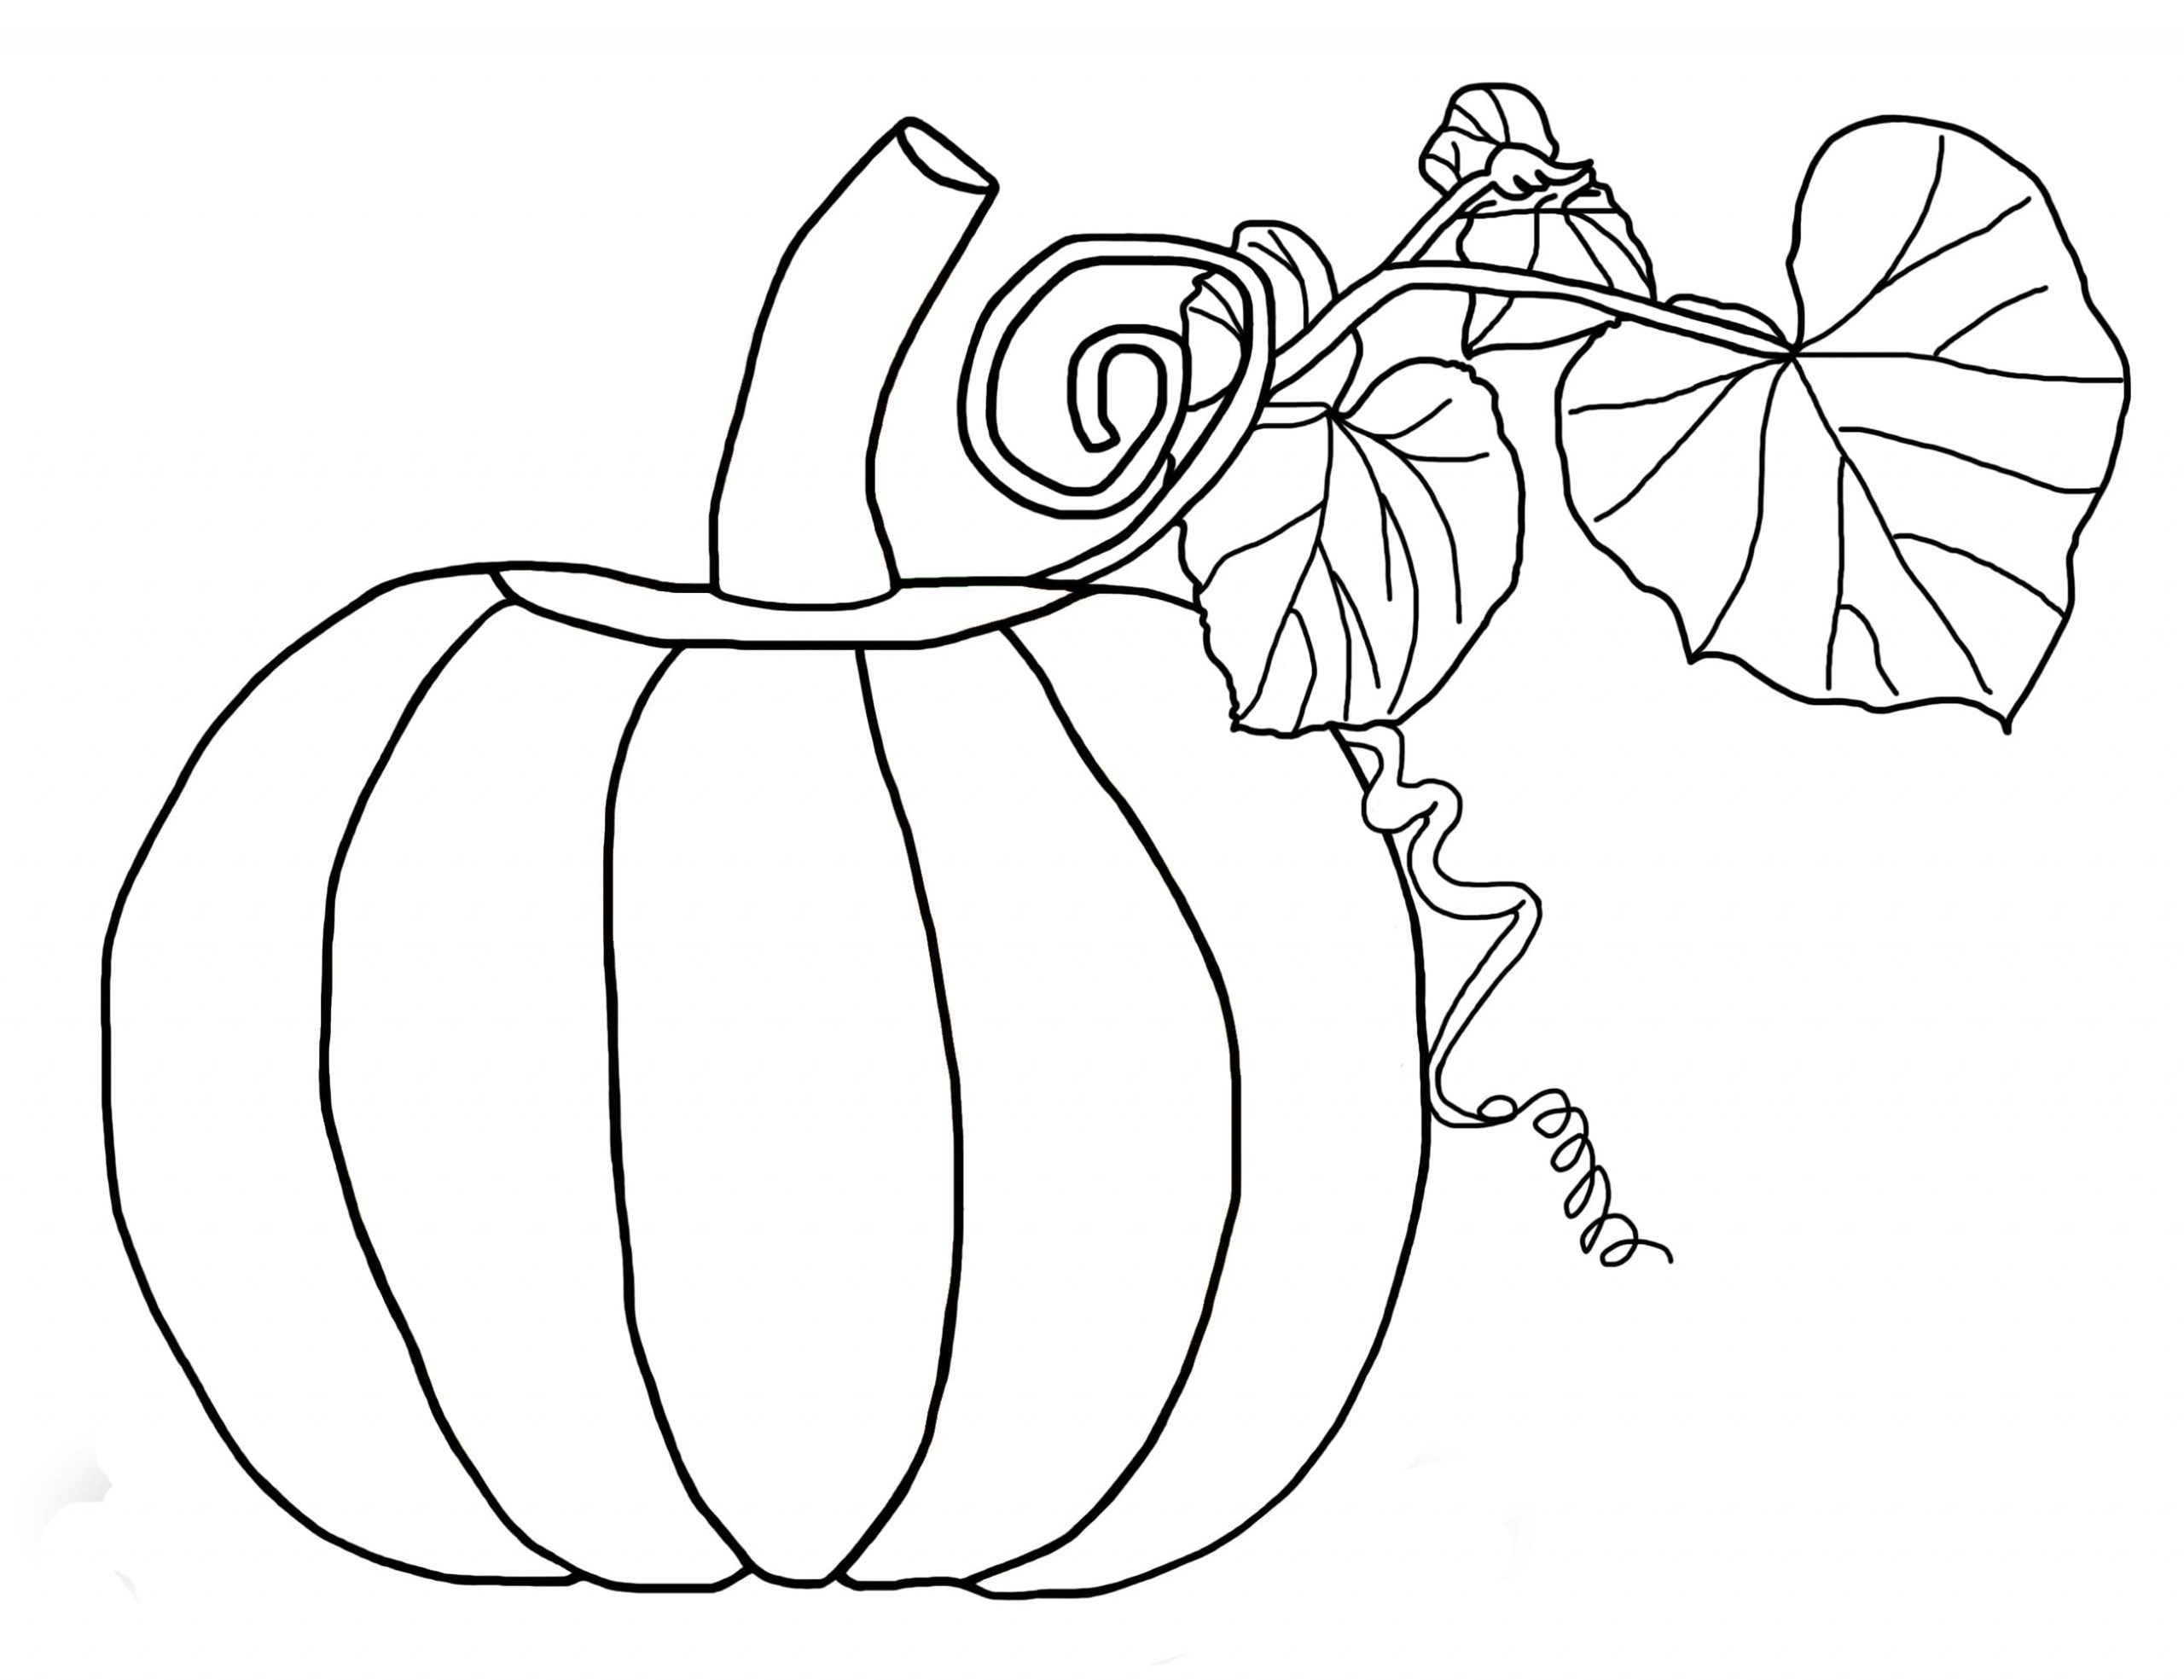 Pumpkin Printable Image For Kids